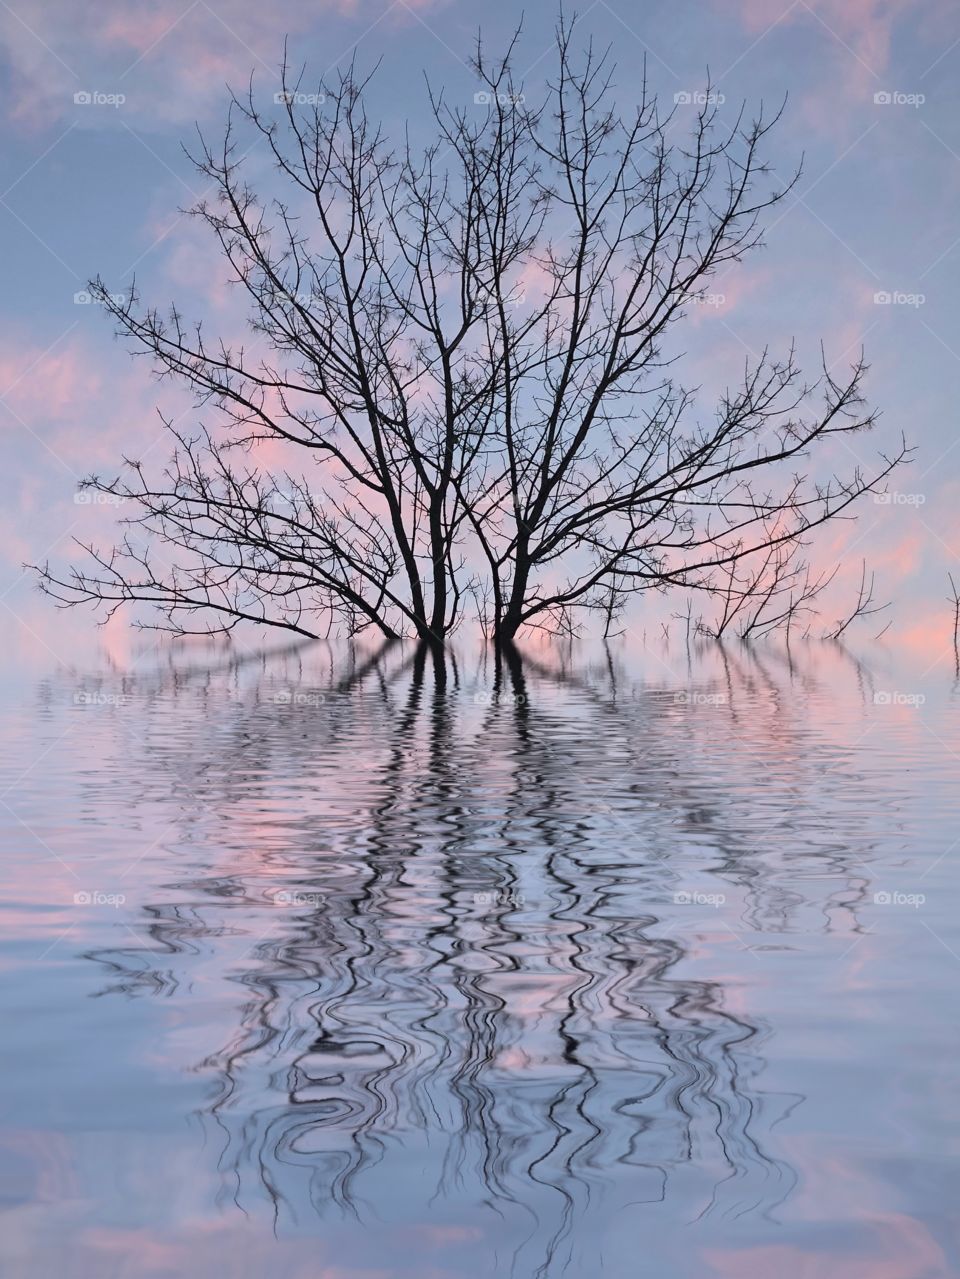 Reflection of tree at sunrise